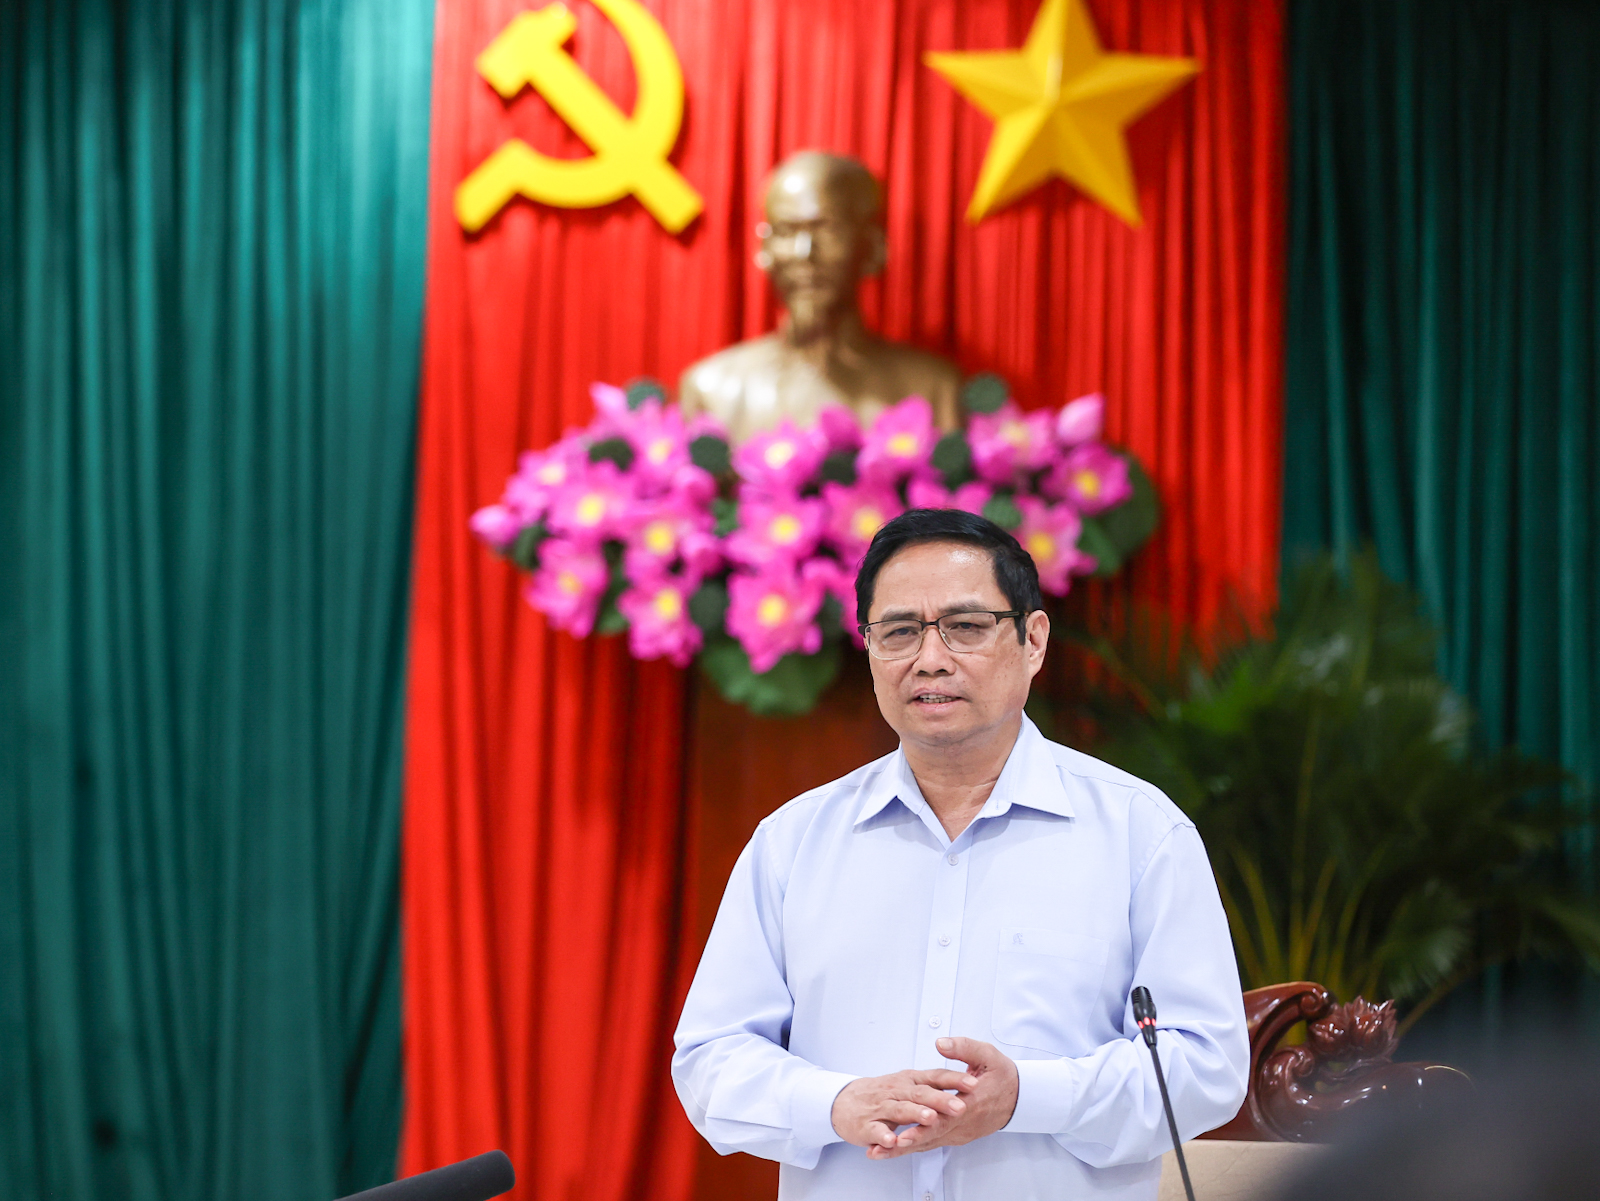 Thủ tướng Chính phủ Phạm Minh Chính phát biểu tại buổi làm việc với  Ban thường vụ Tỉnh ủy Bình Phước về tình hình phát triển kinh tế - xã hội năm 2021, định hướng, giải pháp phát triển kinh tế - xã hội năm 2022 và các năm tiếp theo.